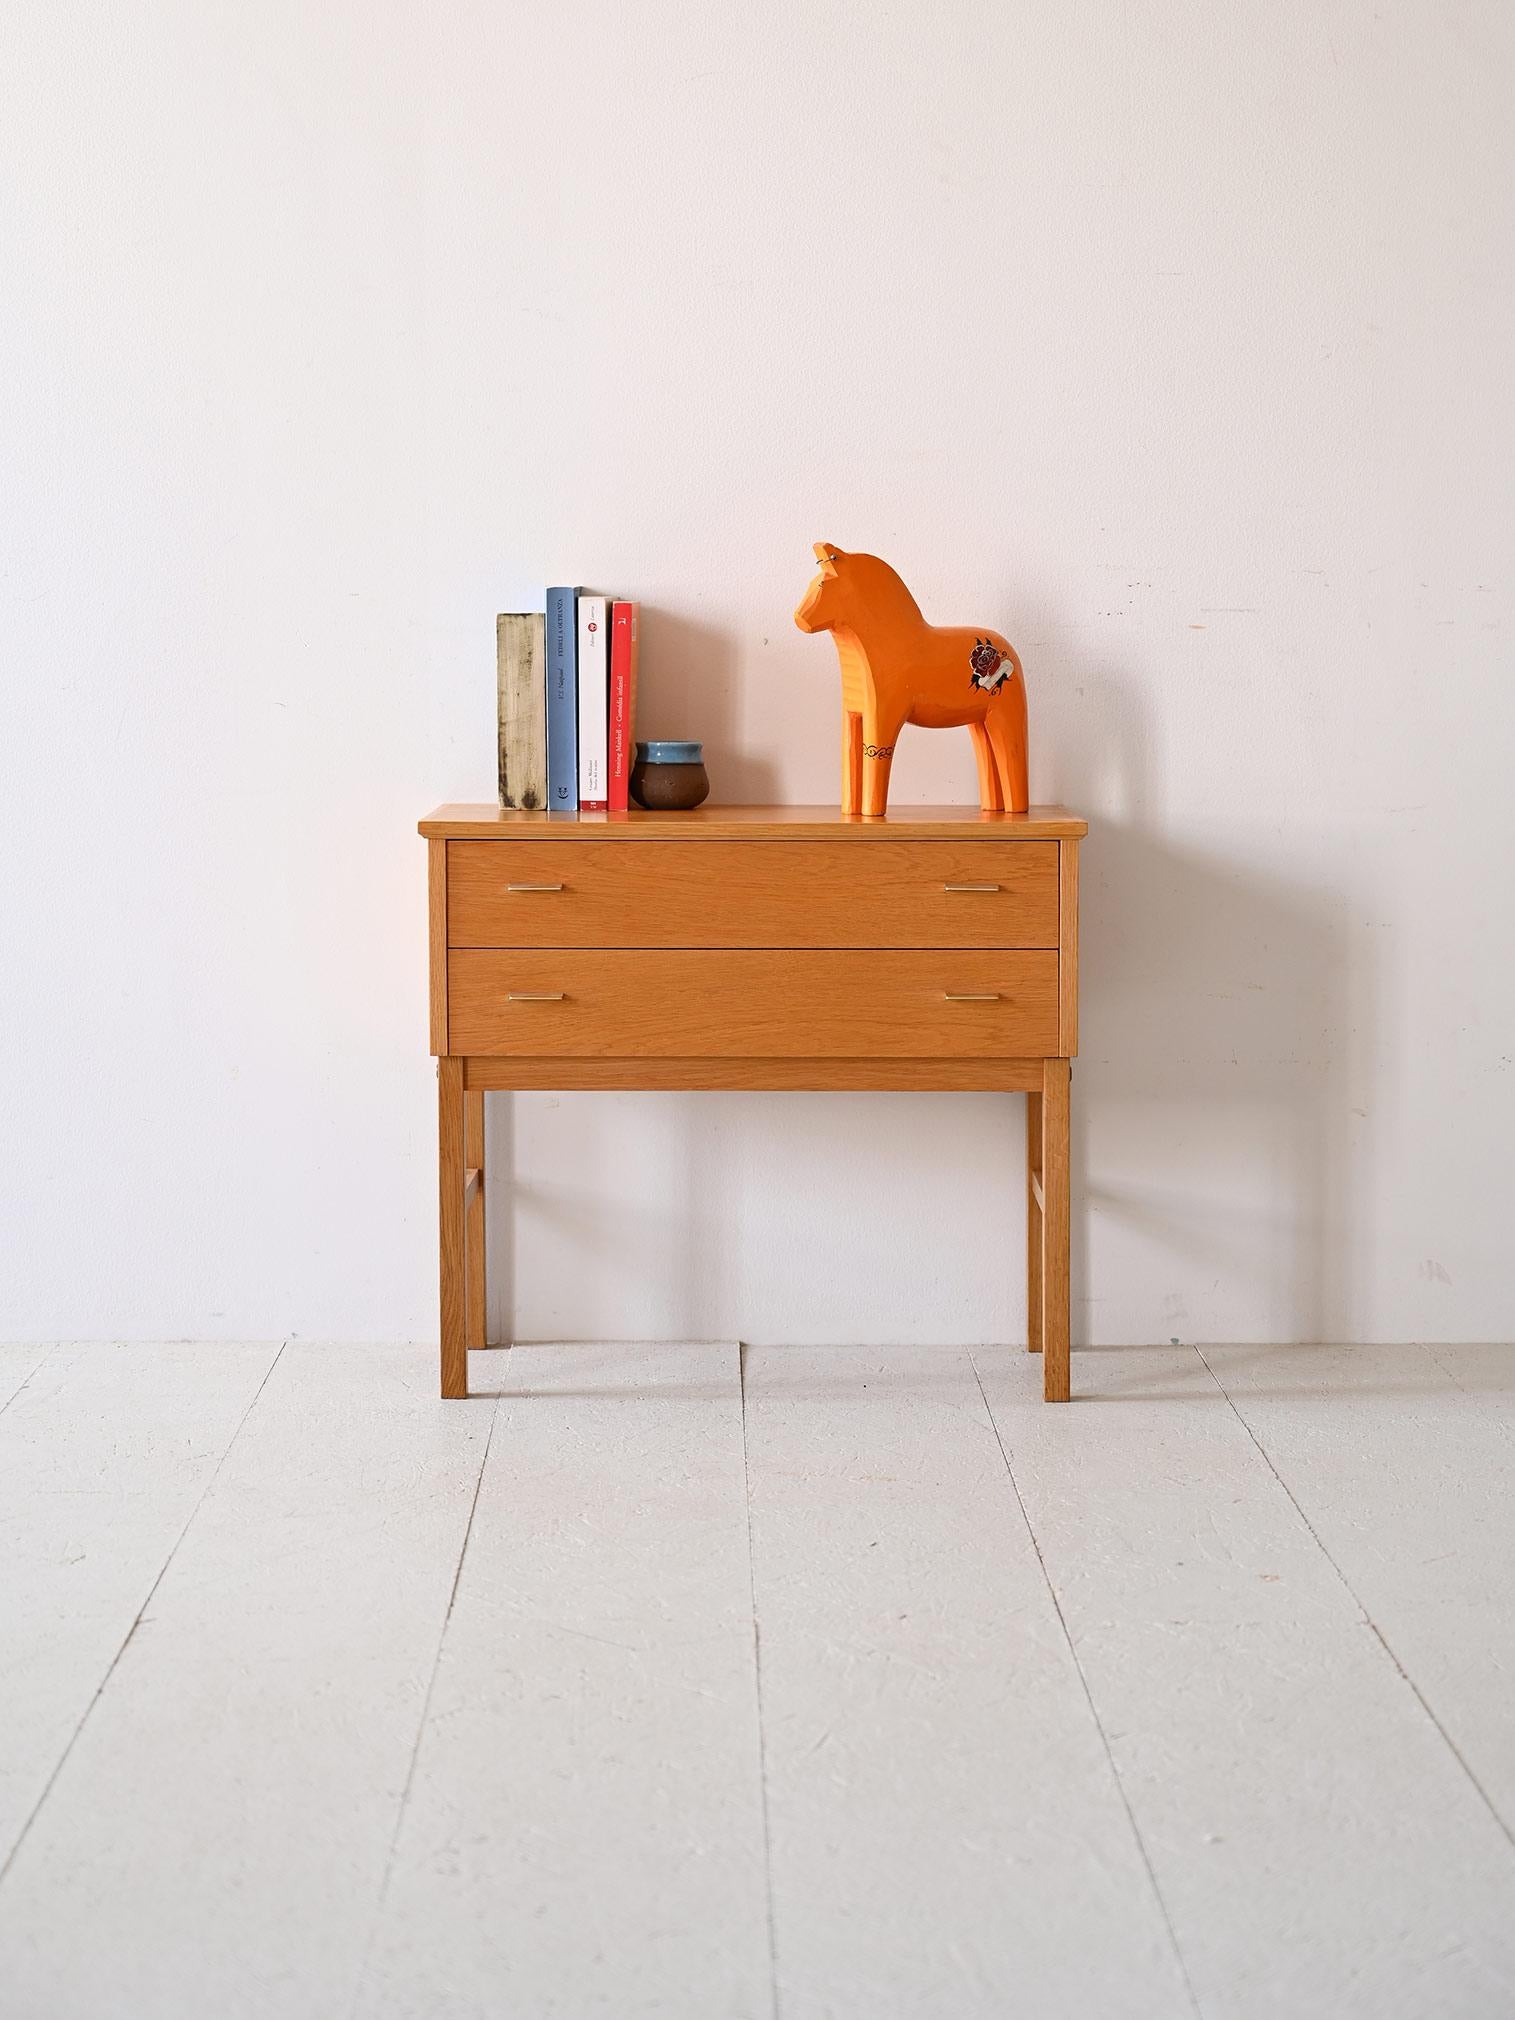 Nachttisch/Schubladenschrank mit Schubladen aus skandinavischer Produktion, hergestellt 1969.
Dieses besondere Designstück zeichnet sich durch seine originelle Form und seine warme Eichenfarbe aus.

Die beiden Schubladen sind mit einem Metallgriff